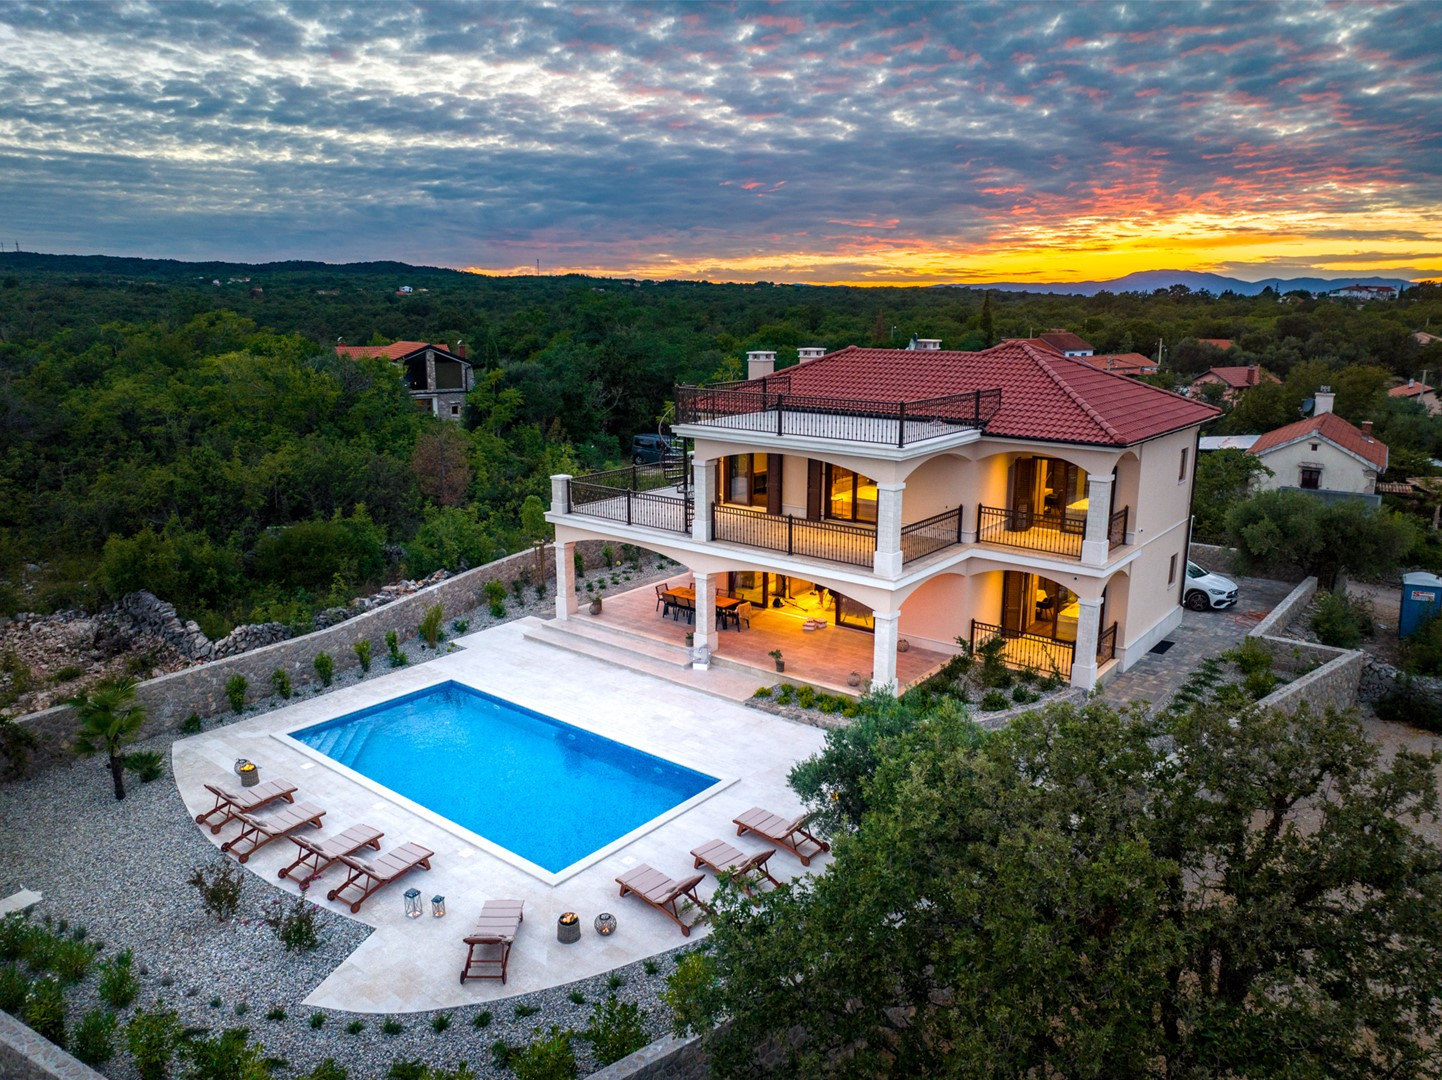 KRK LUXUSVILLEN - Luxusvilla Glabrova mit Pool, Sauna, privatem Garten und Parkplatz in Gostinjca auf der Insel Krk